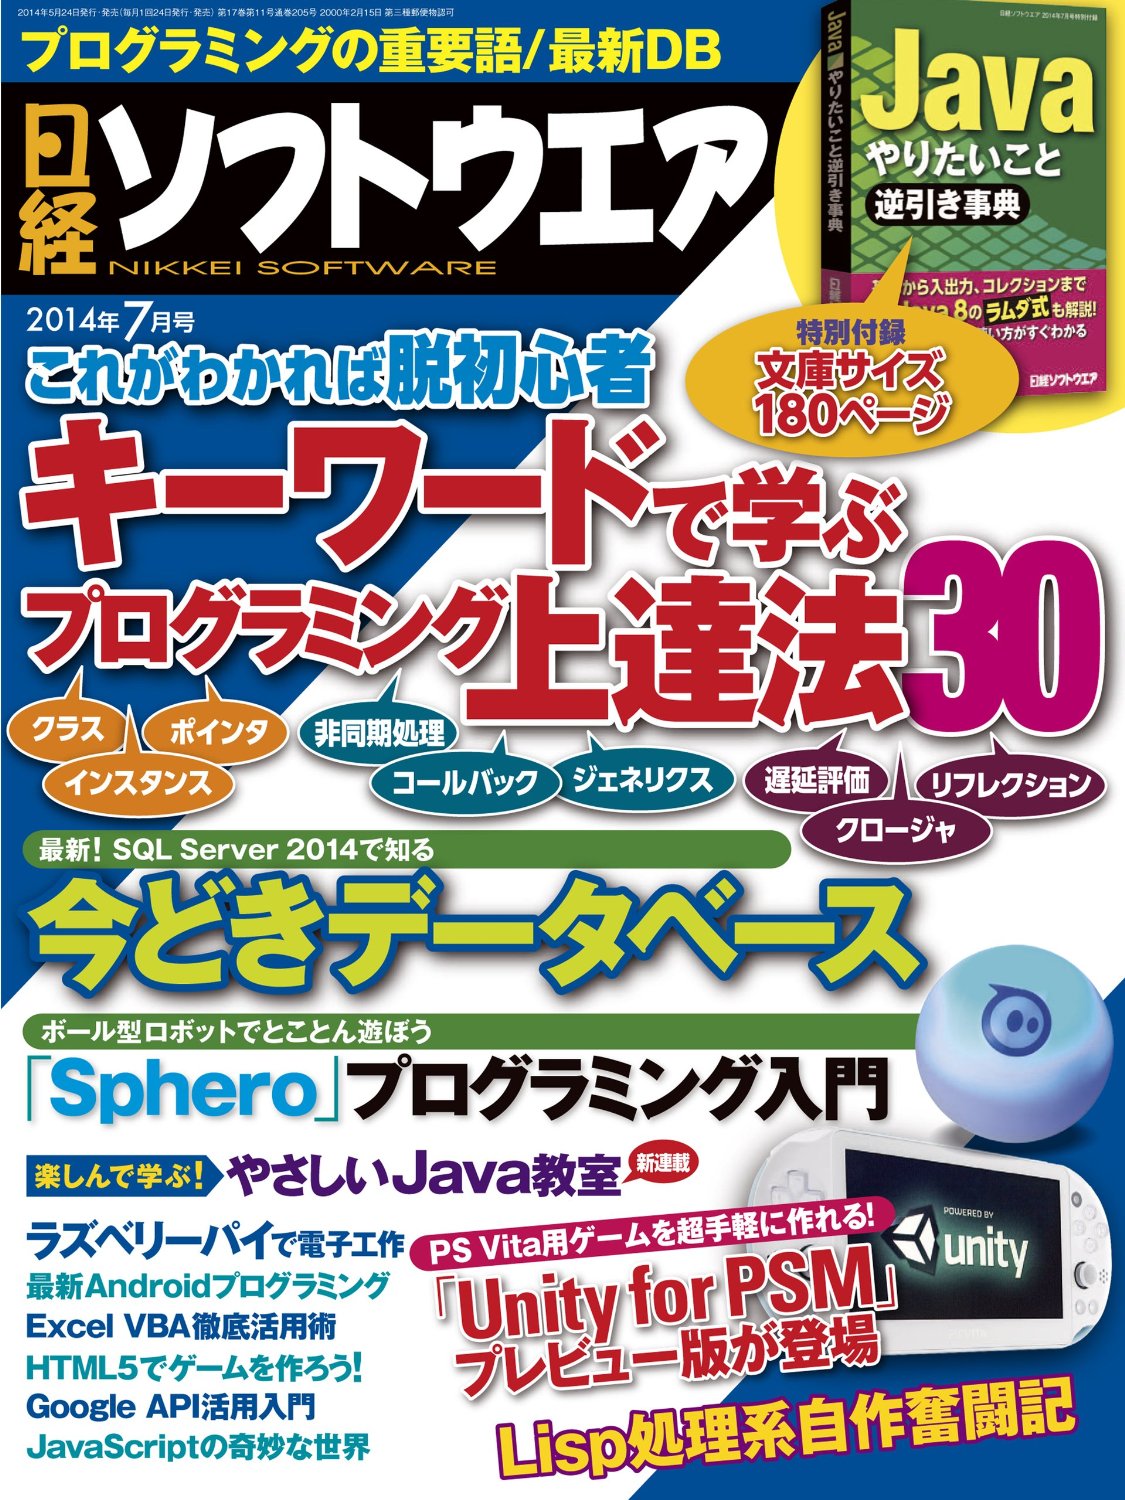 日経ソフトウエア2014年7月号
「ボール型ロボット「Sphero」プログラミング入門」